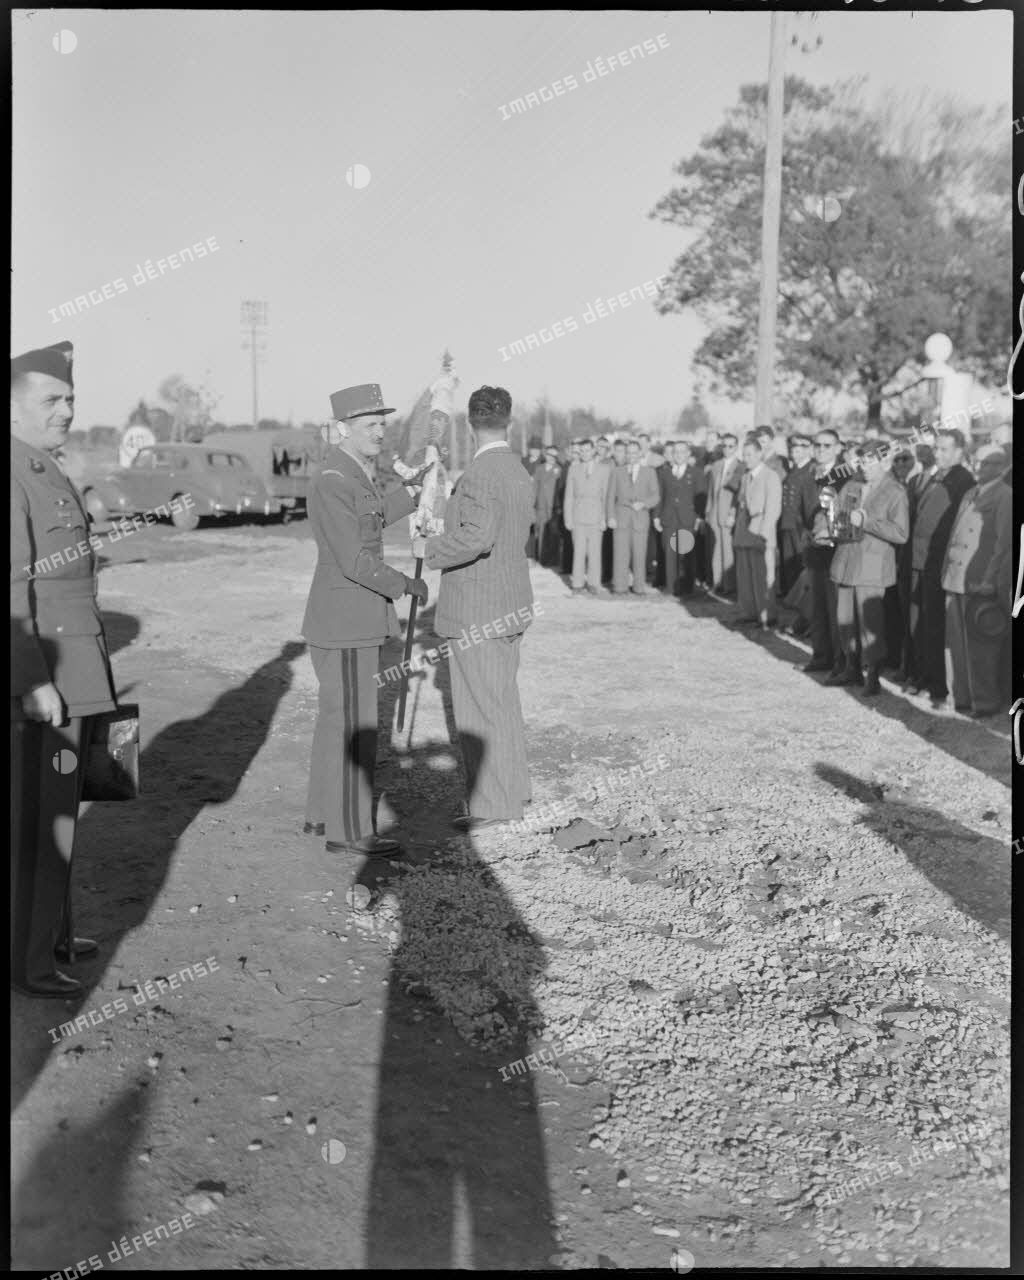 Le général Philippe Leclerc échange un drapeau avec une autorité civile, sous le regard d'autorités civiles et militaires.